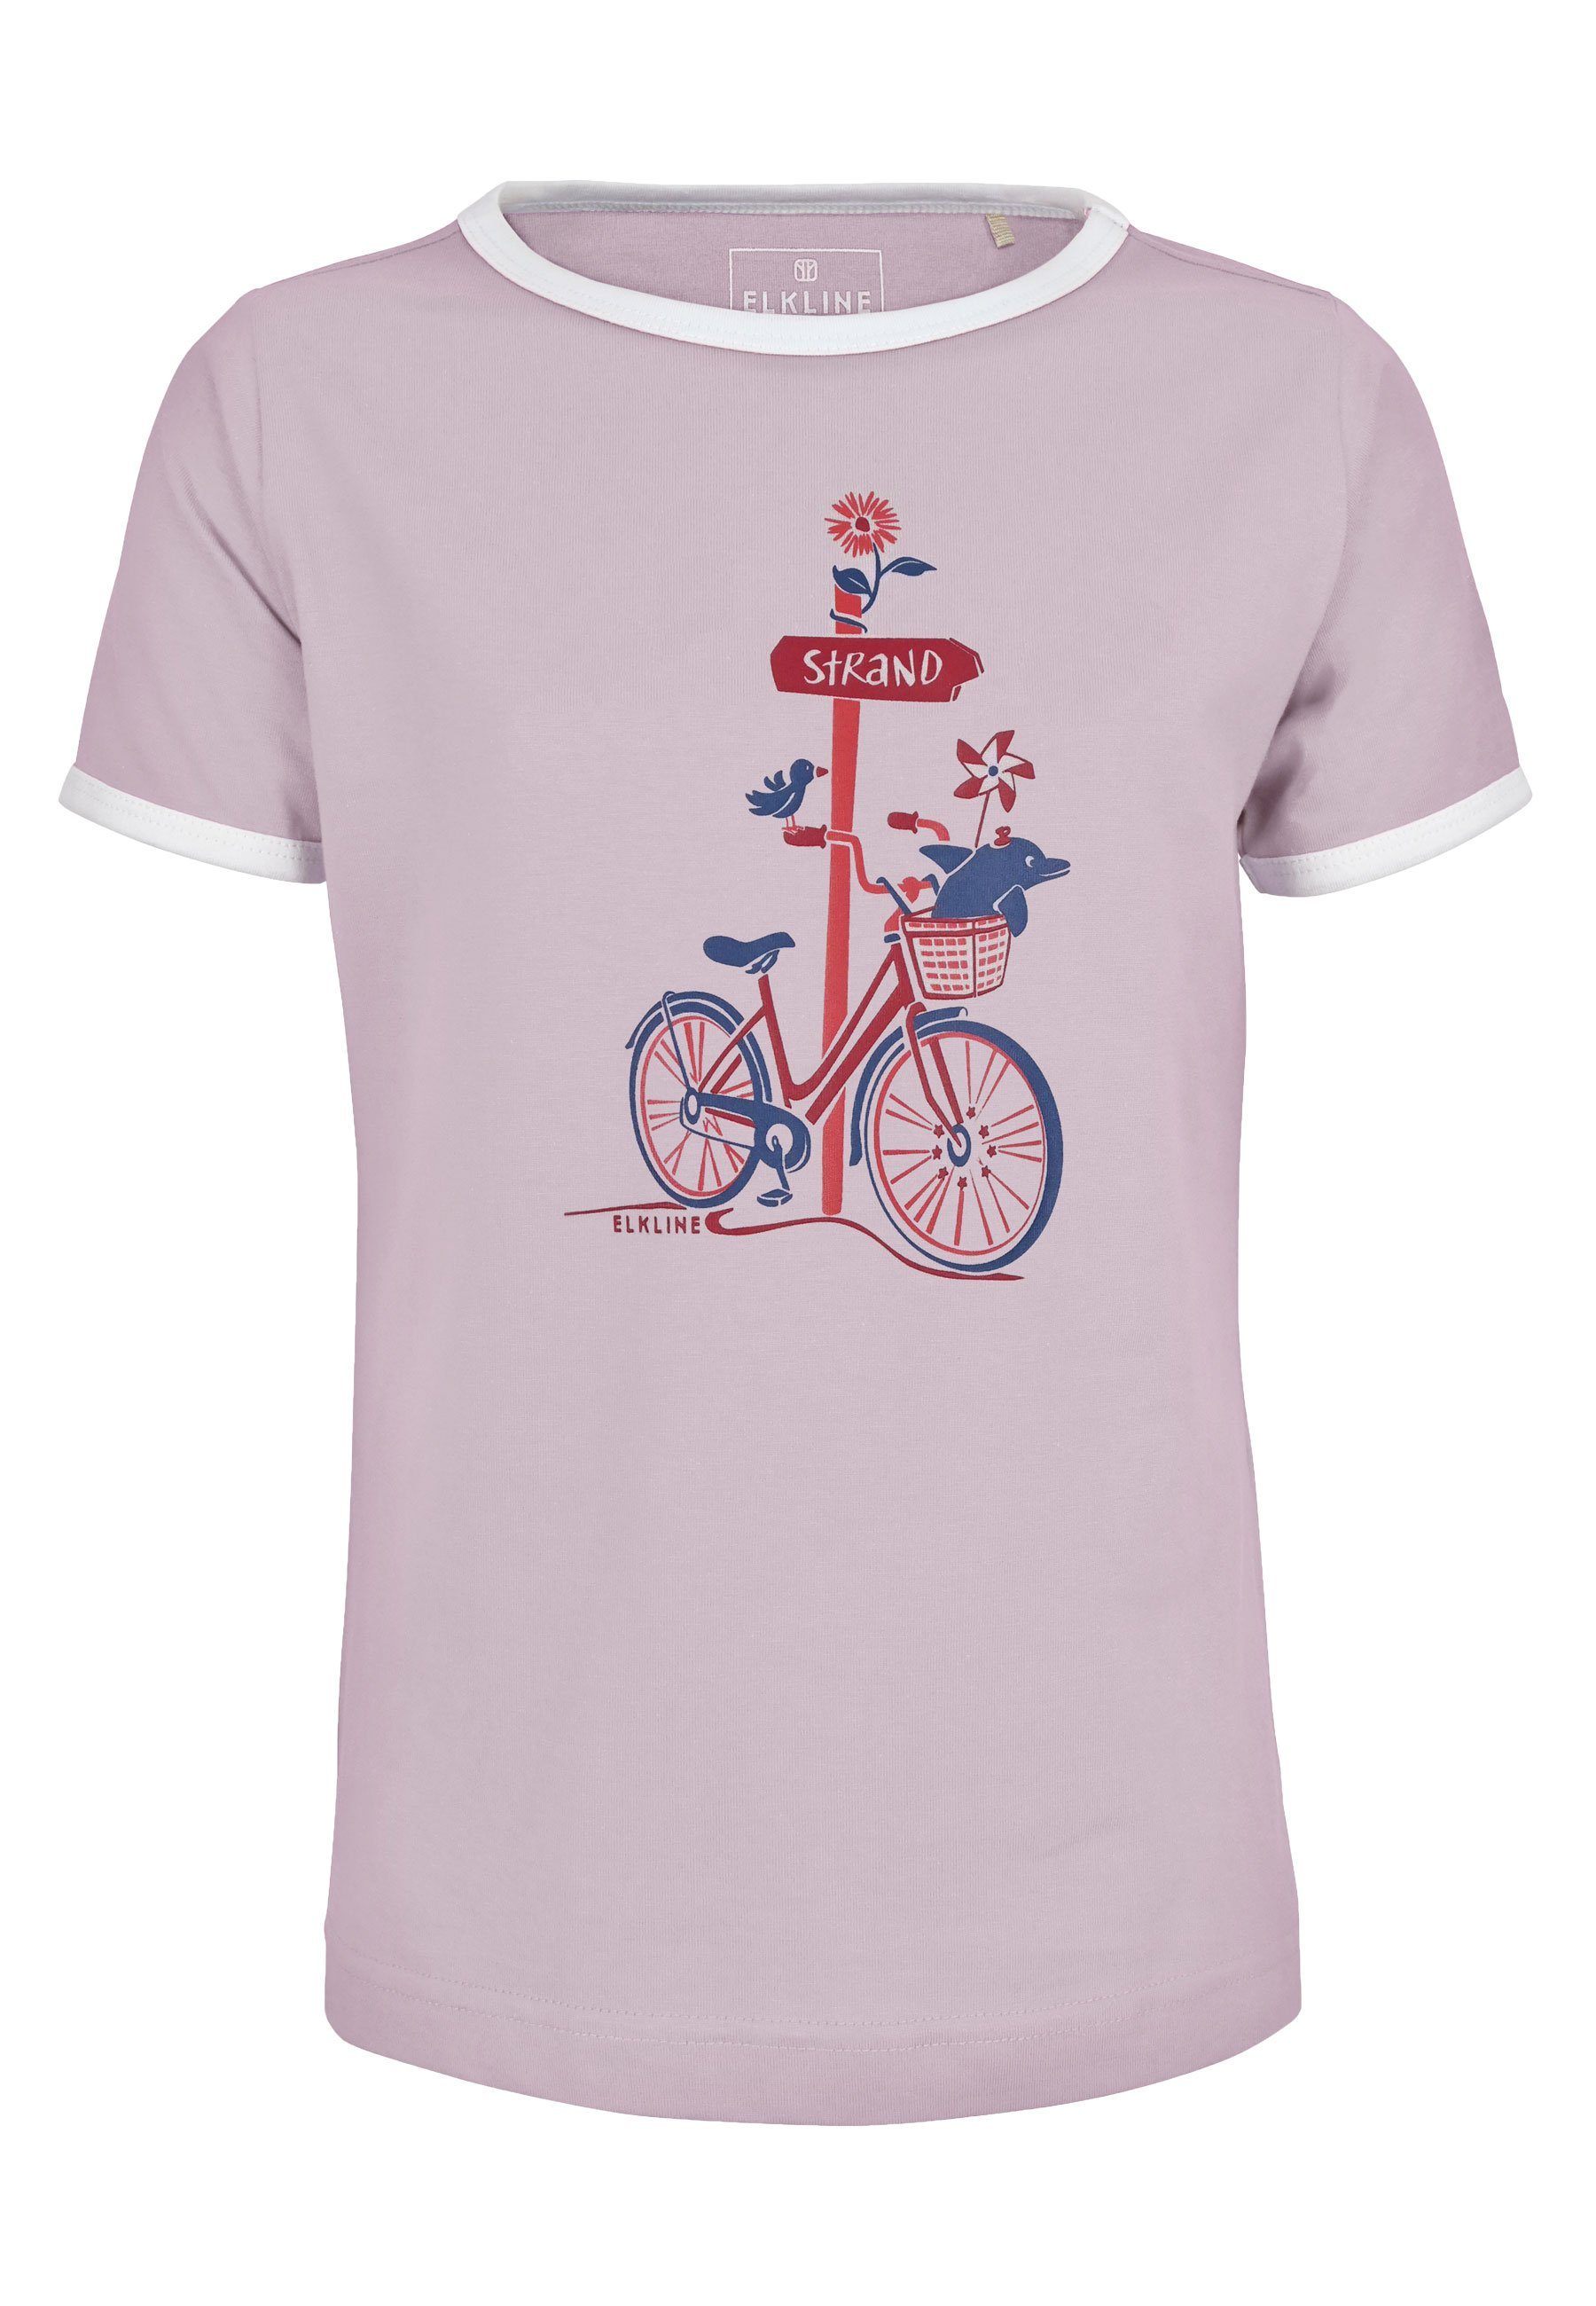 Print Zum Brust tailliert Fahrrad leicht Elkline lavender T-Shirt Strand